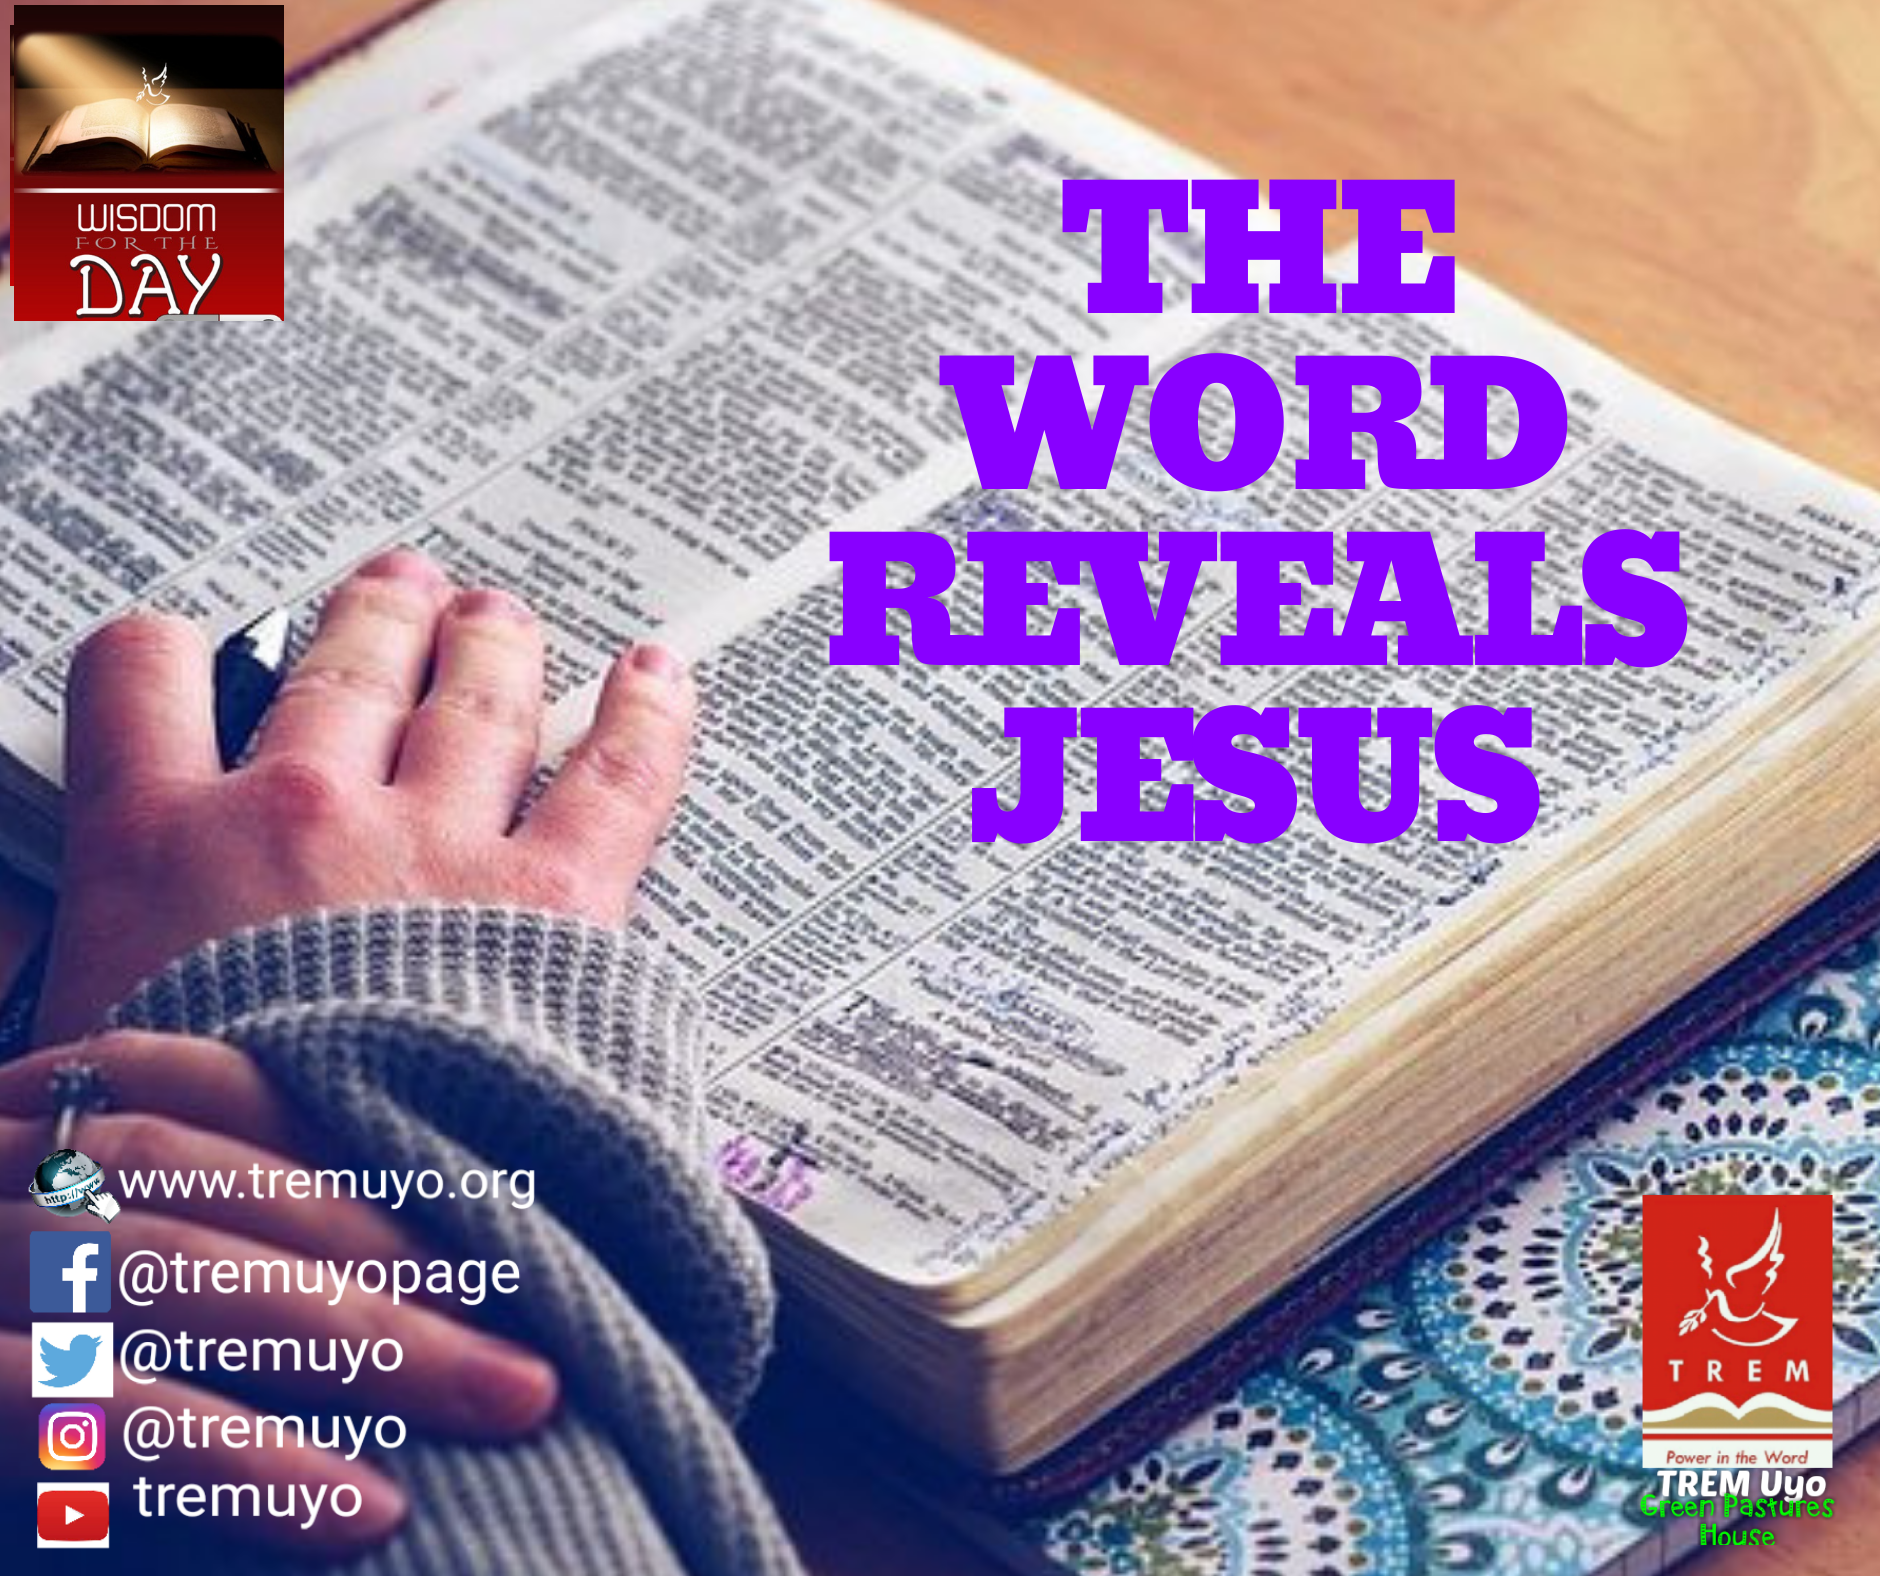 THE WORD REVEALS JESUS